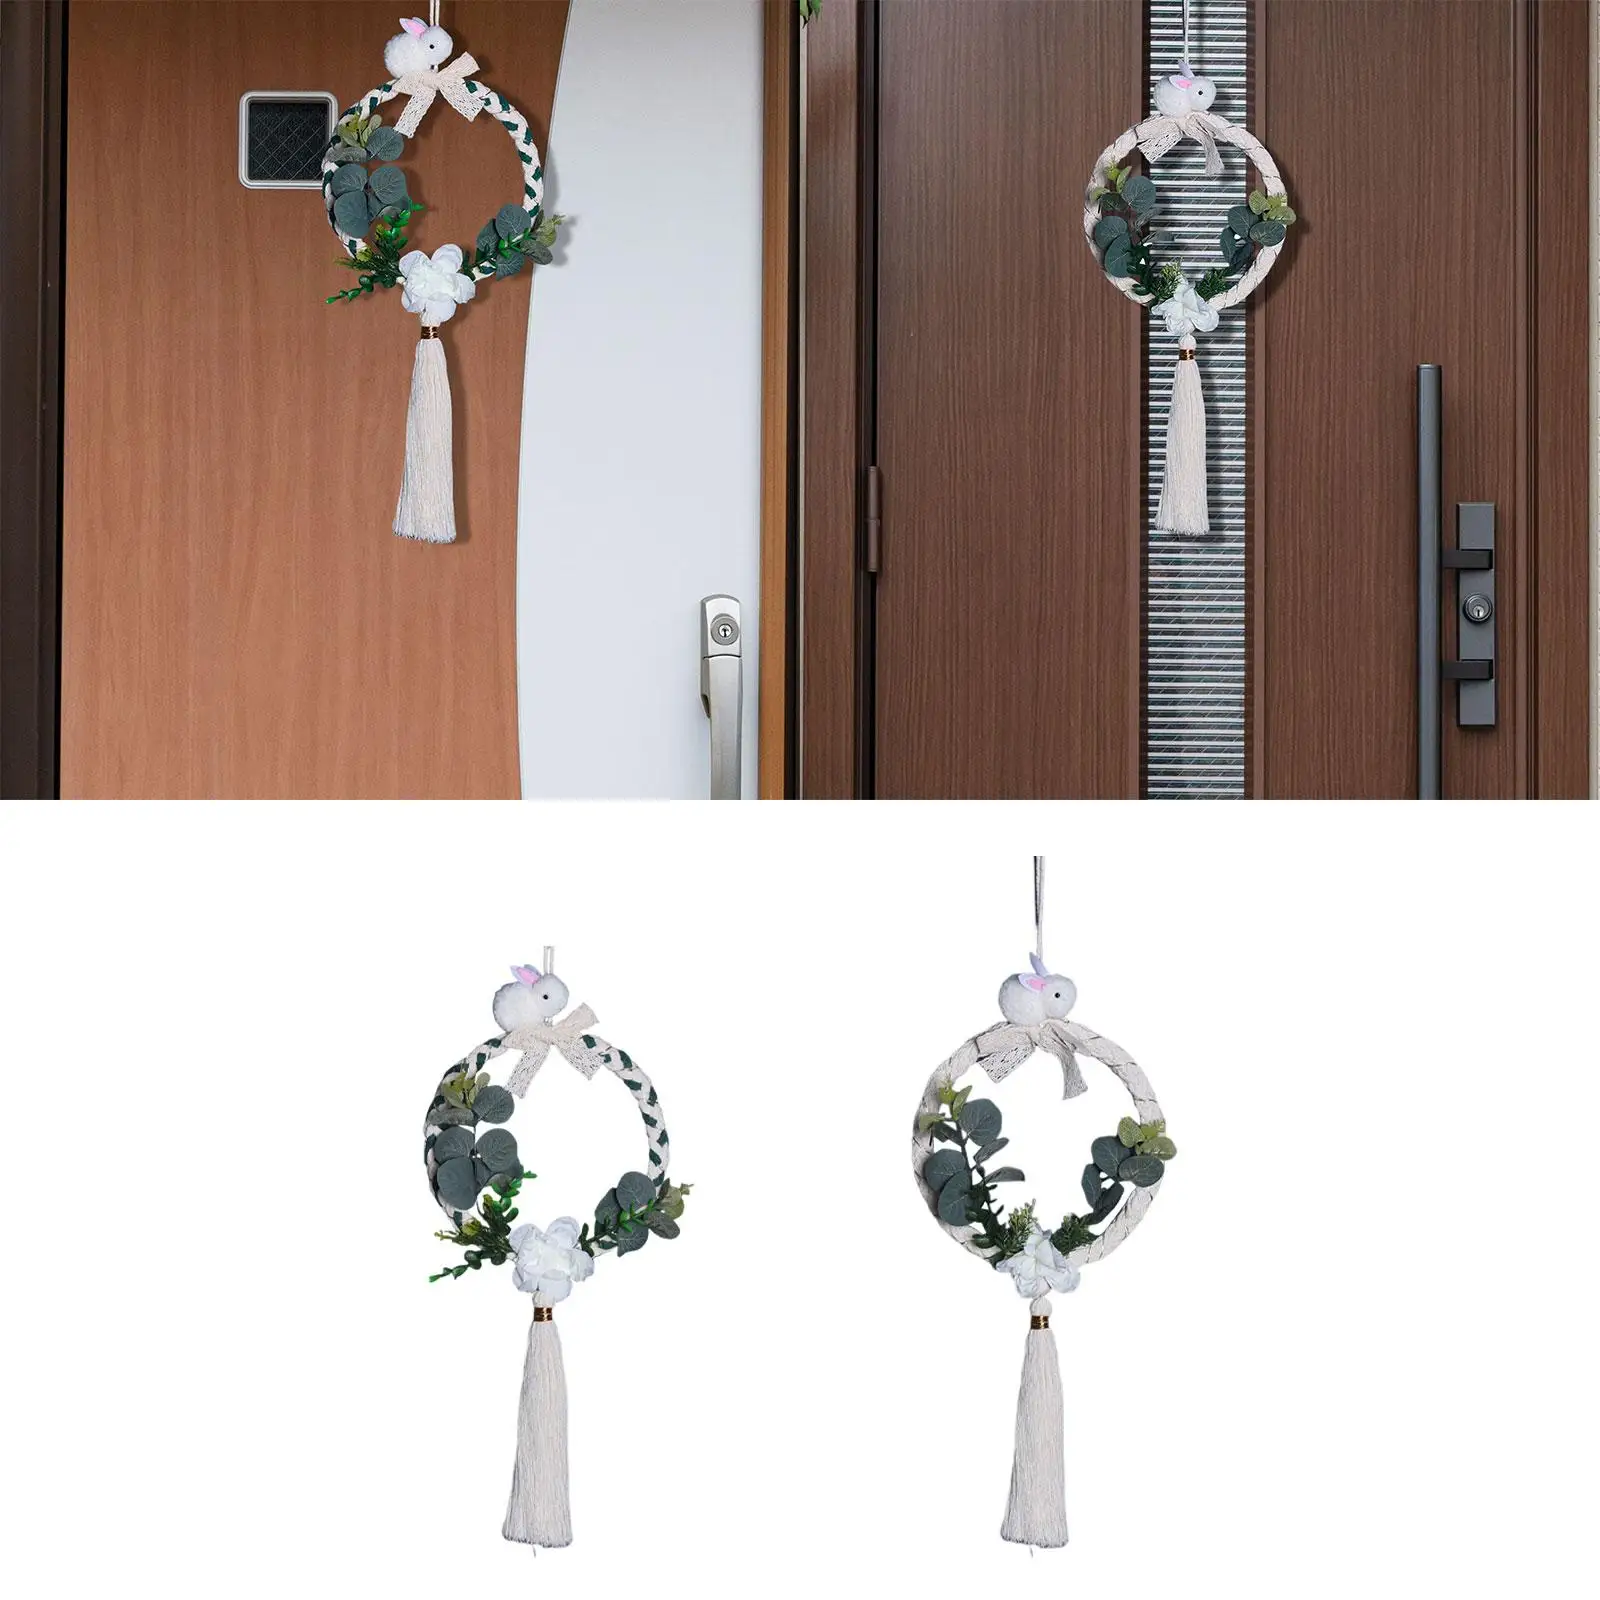 Bohemian Bunny Wreath for Front Door Artificial Flower Ornaments Macrame Tassel Garland for Wedding Dorm Bedroom Living Room